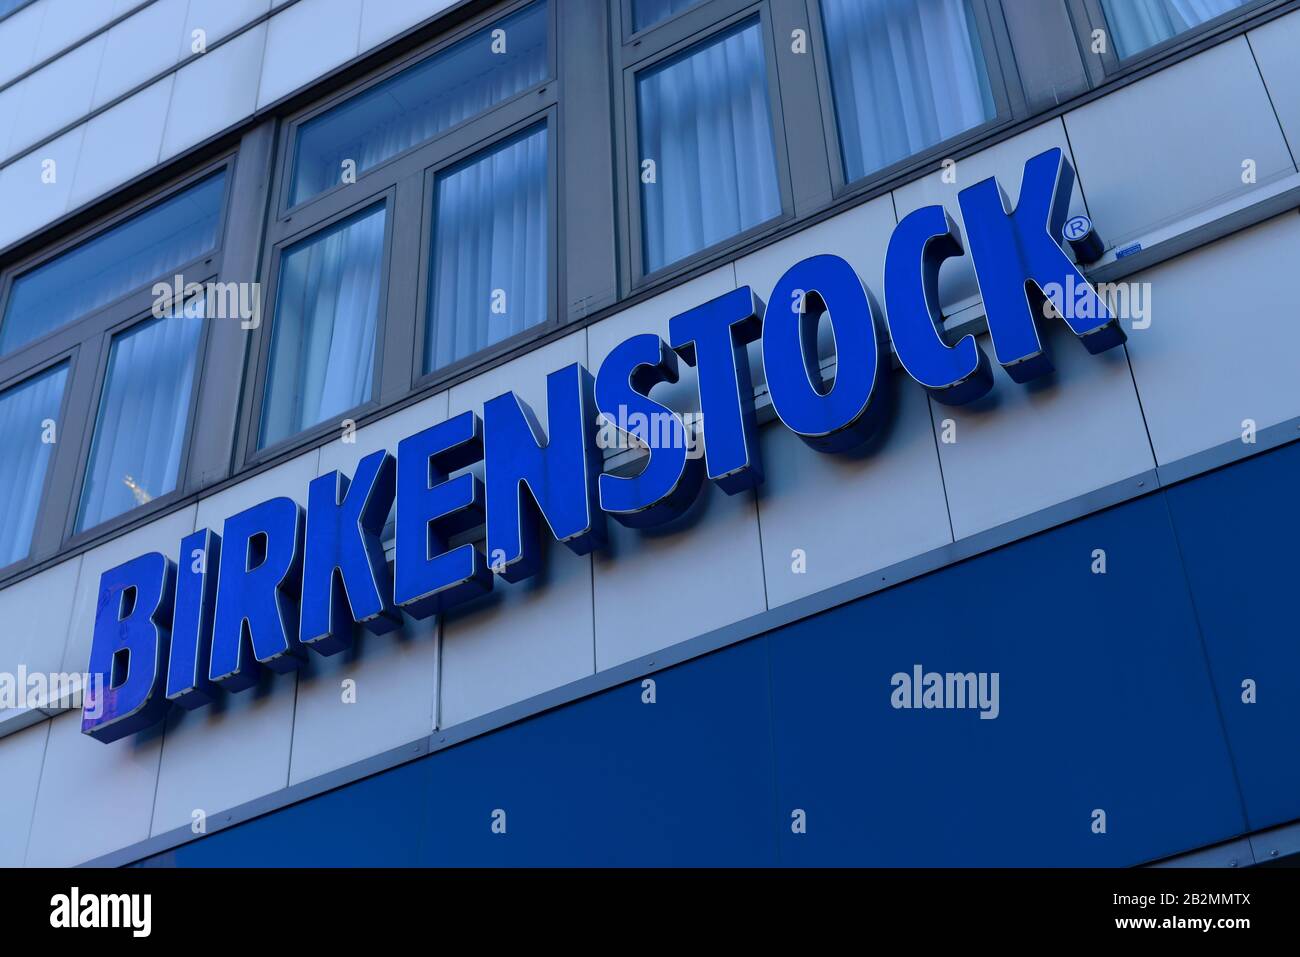 Birkenstock, Schlossstrasse, Steglitz, Berlin, Deutschland Stock Photo -  Alamy